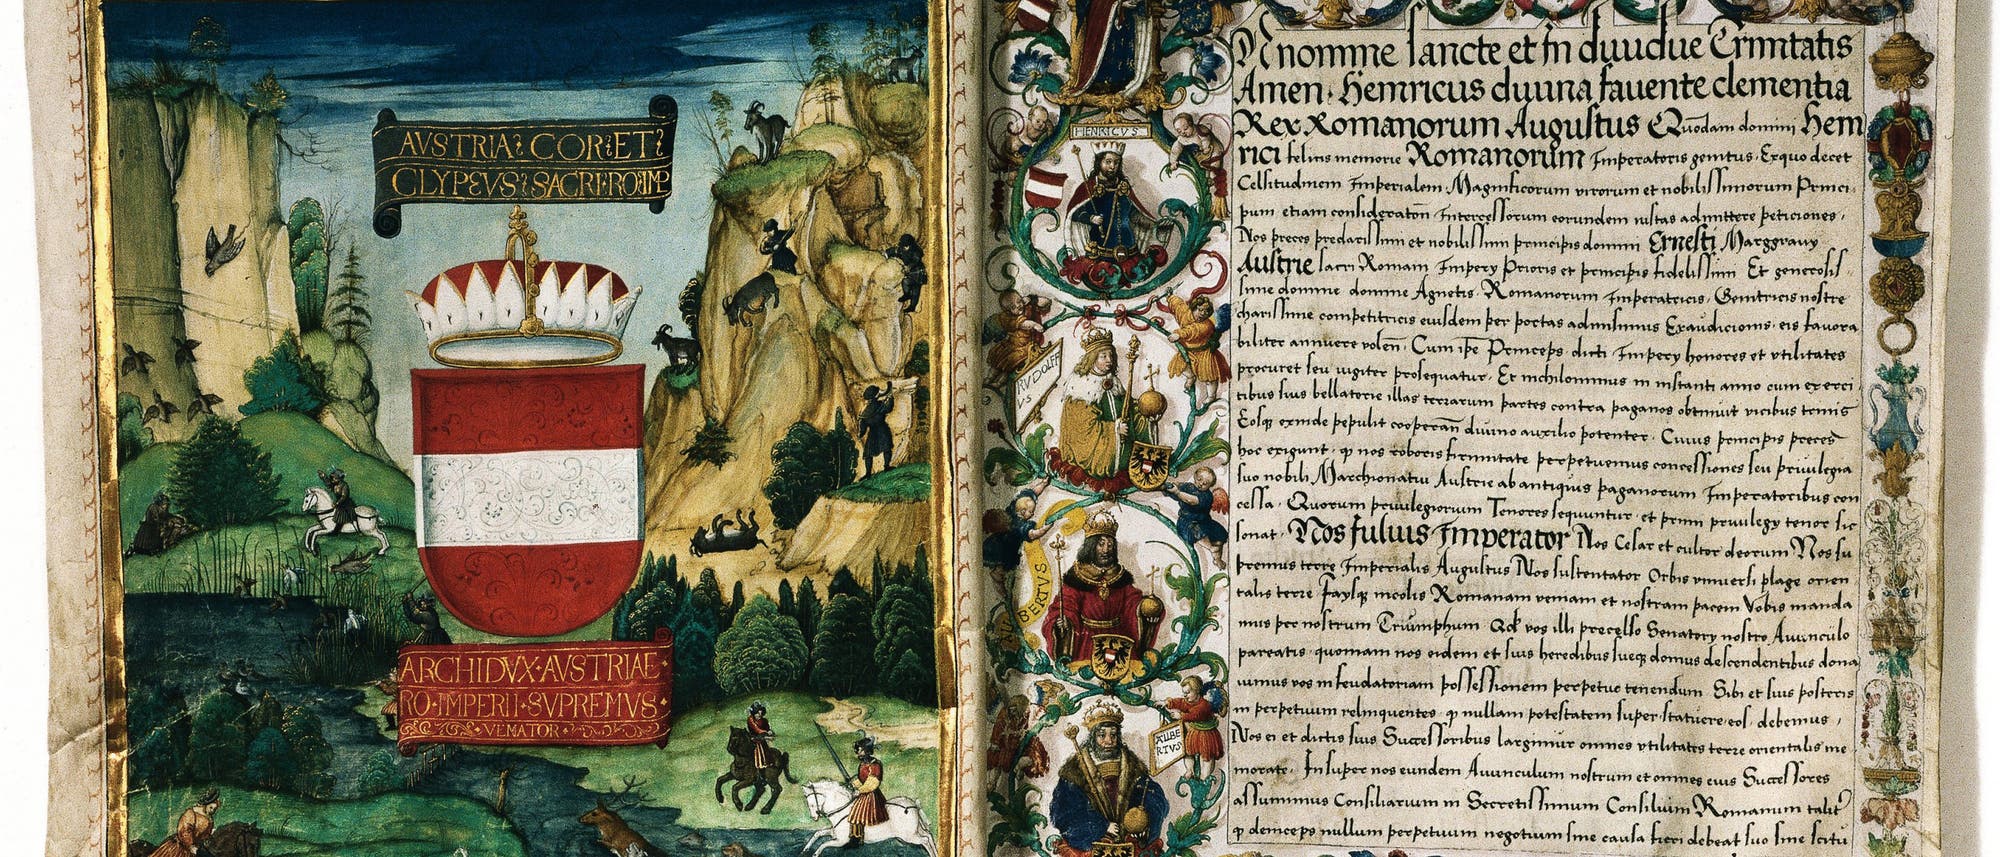 Abschrift des »Privilegium maius« von 1512. Der Habsburger Rudolf IV. hatte den Inhalt des Dokuments 1359 erfunden.